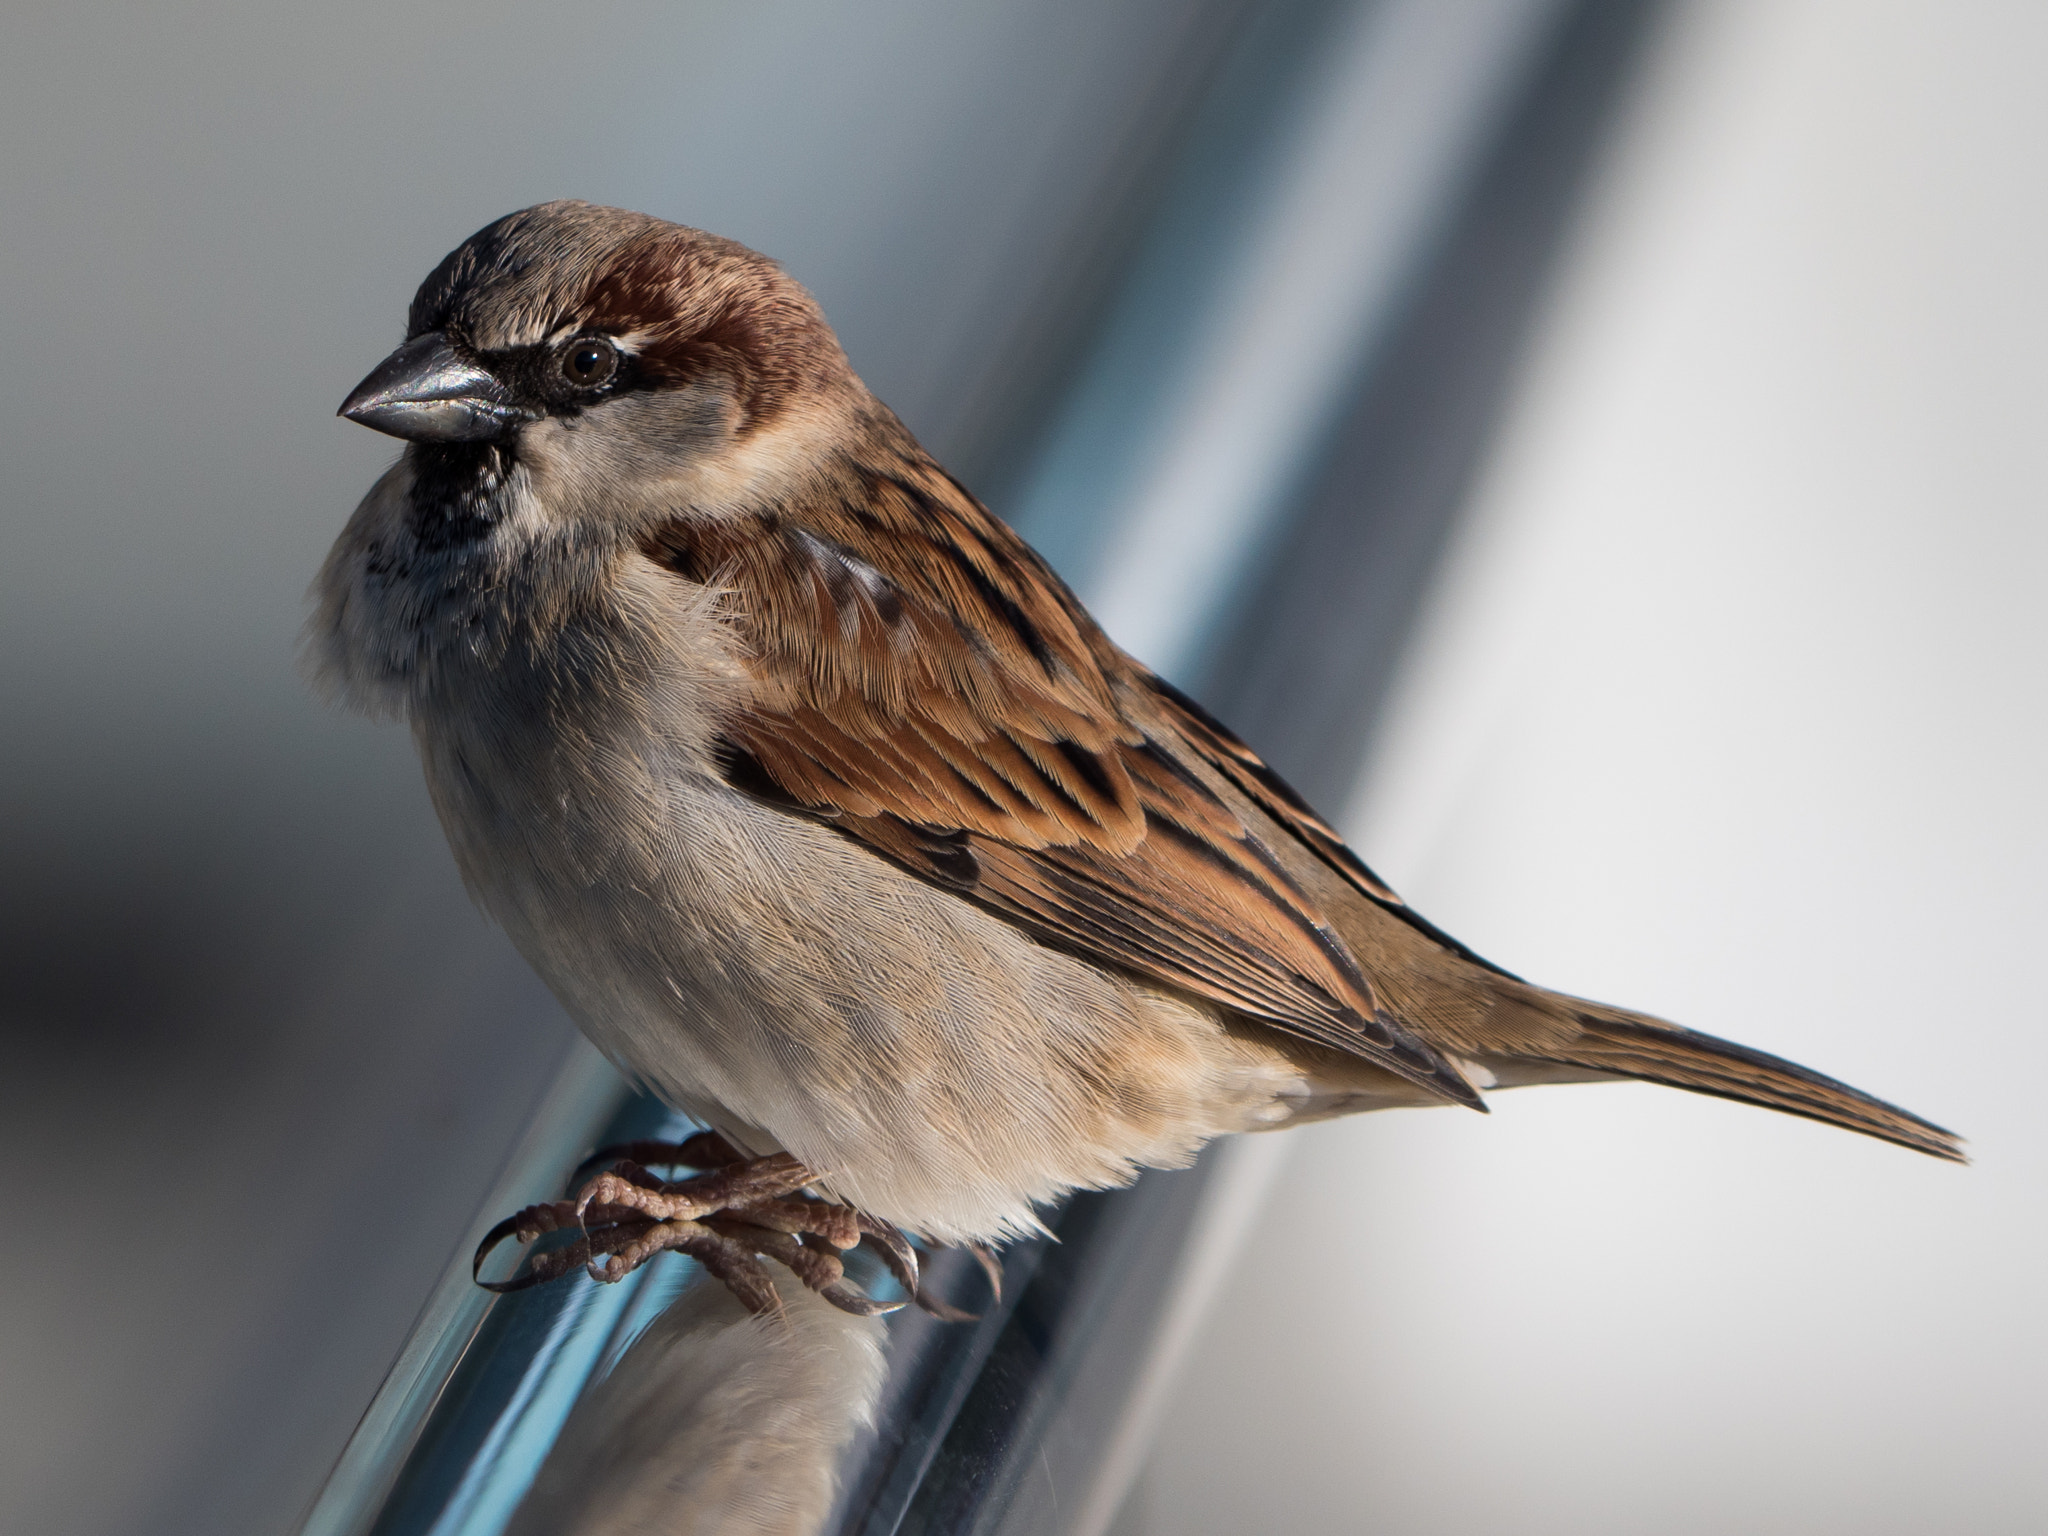 Panasonic Lumix DMC-GH4 sample photo. House sparrow, male photography